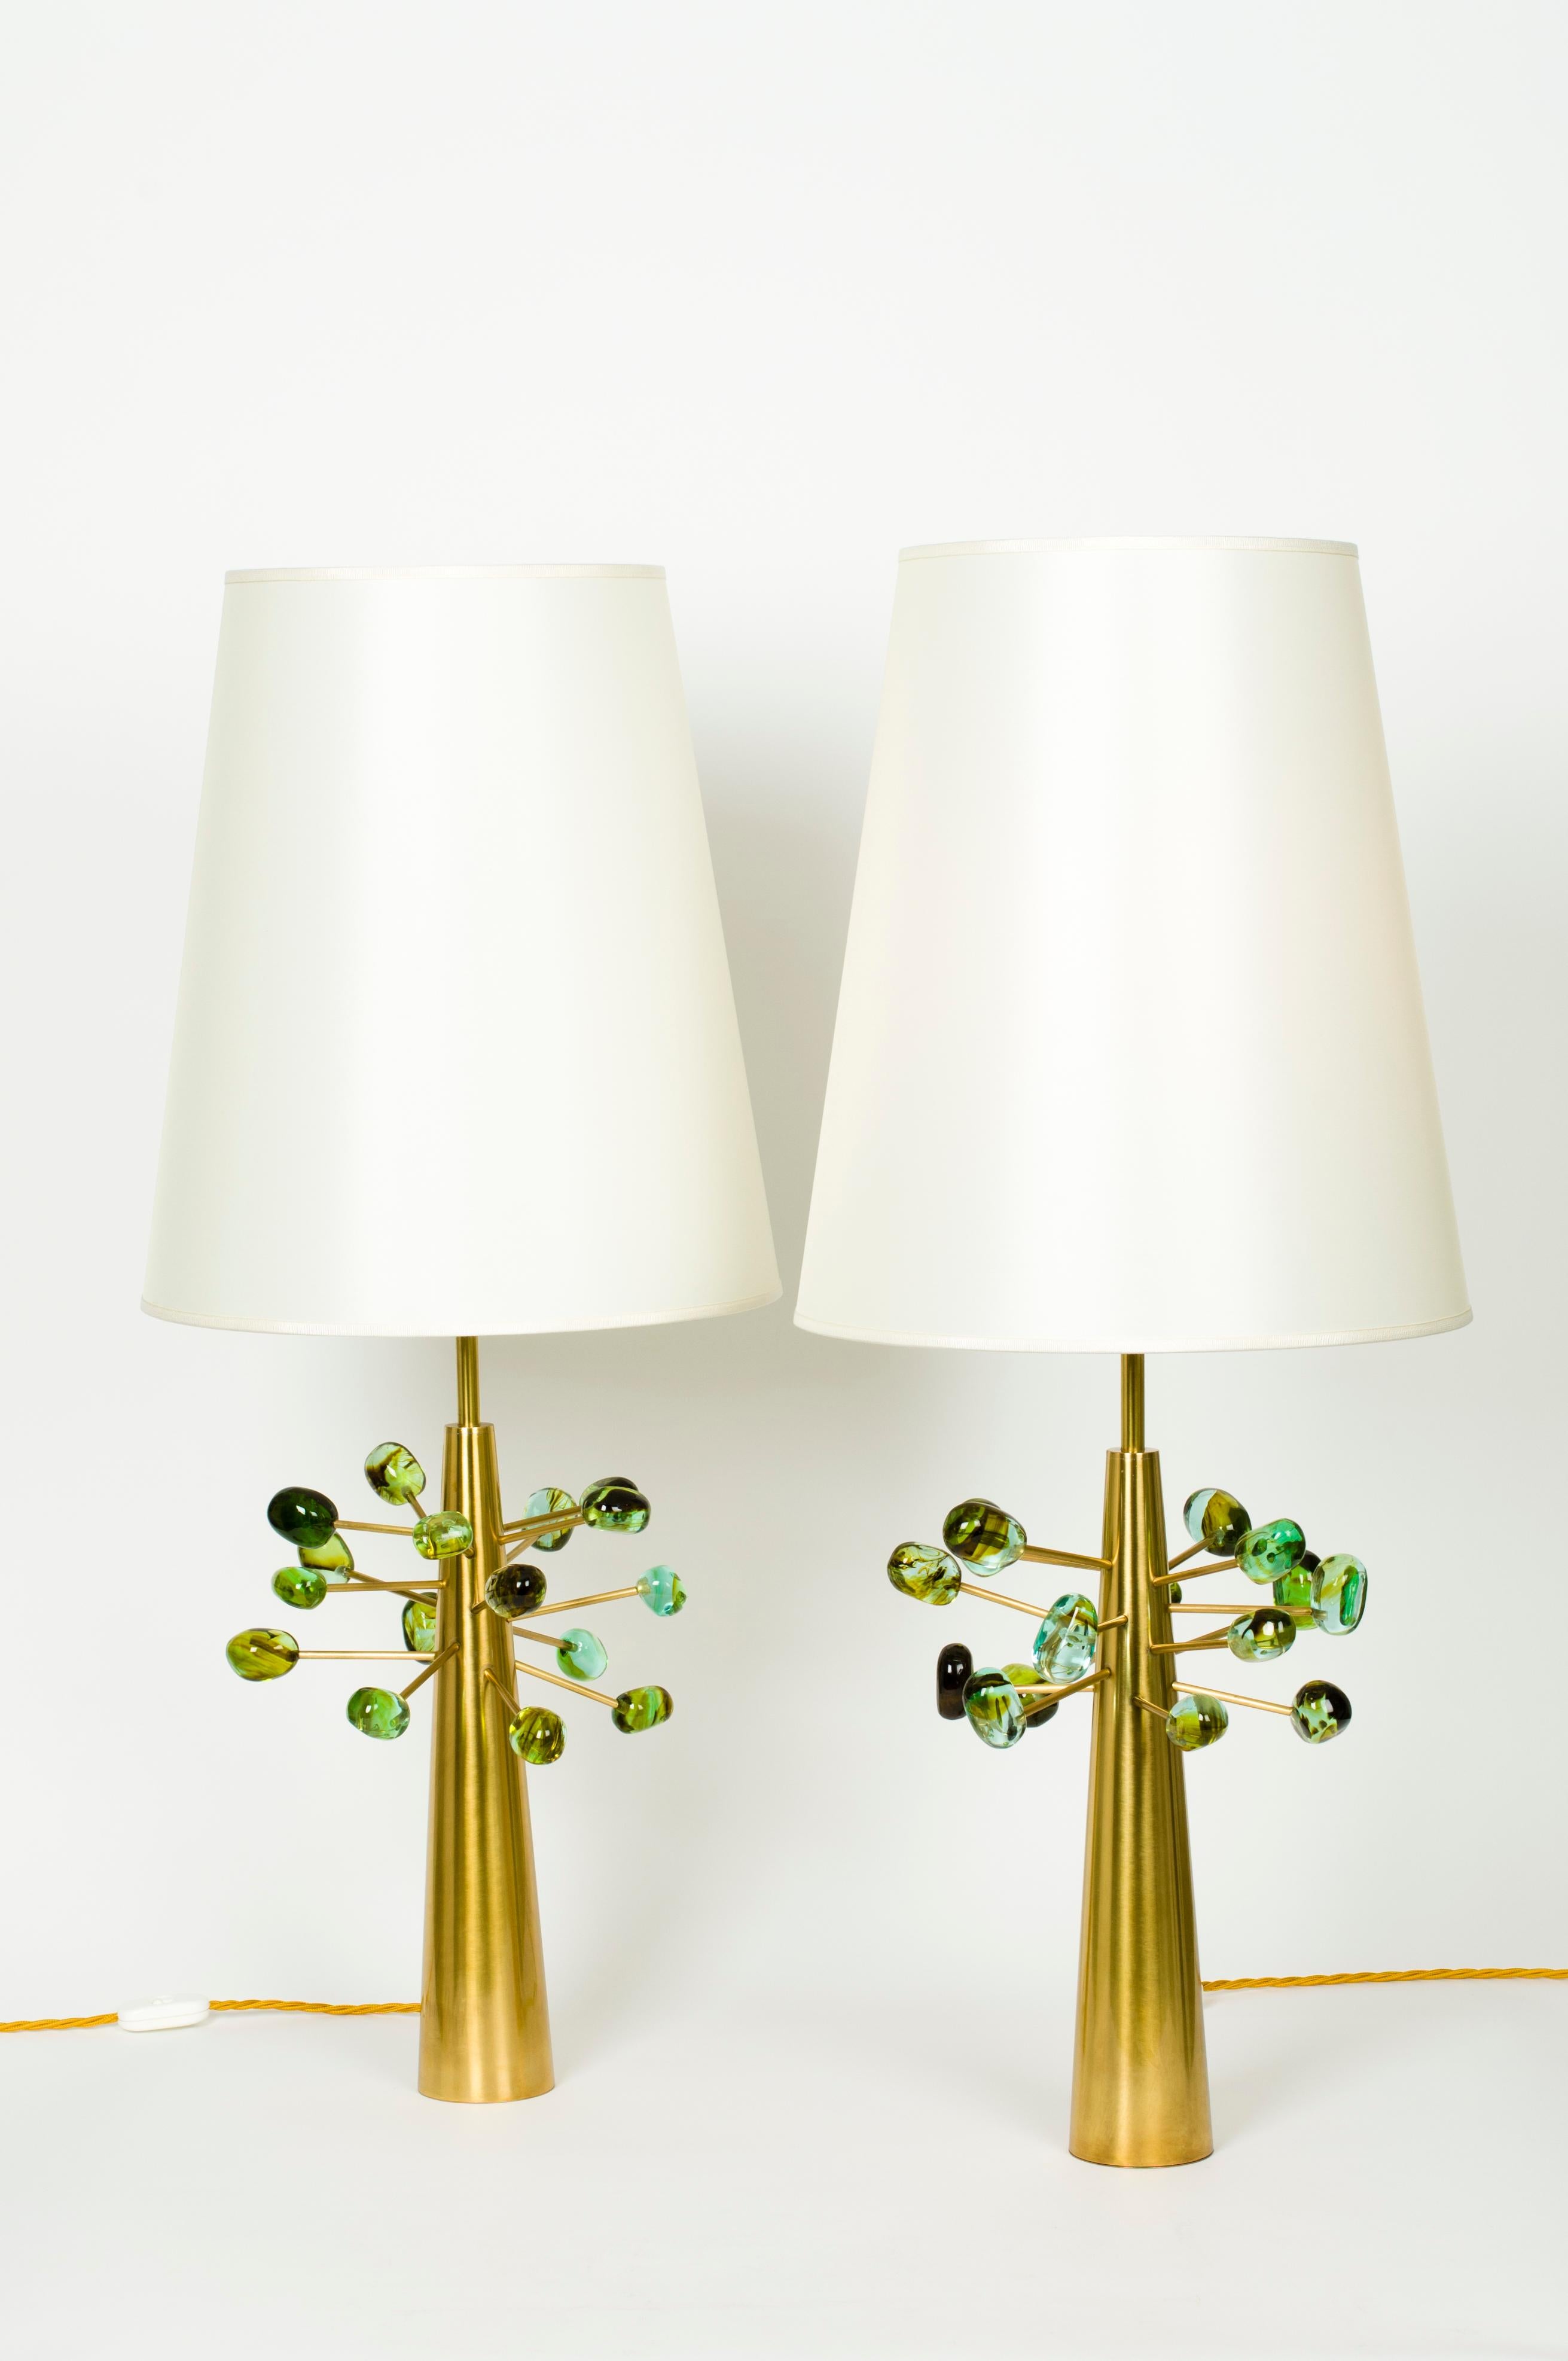 Paire de lampes de table 'GHIANDE ALGA' de Roberto Giulio Rida

Les lampes appartiennent à la collection 